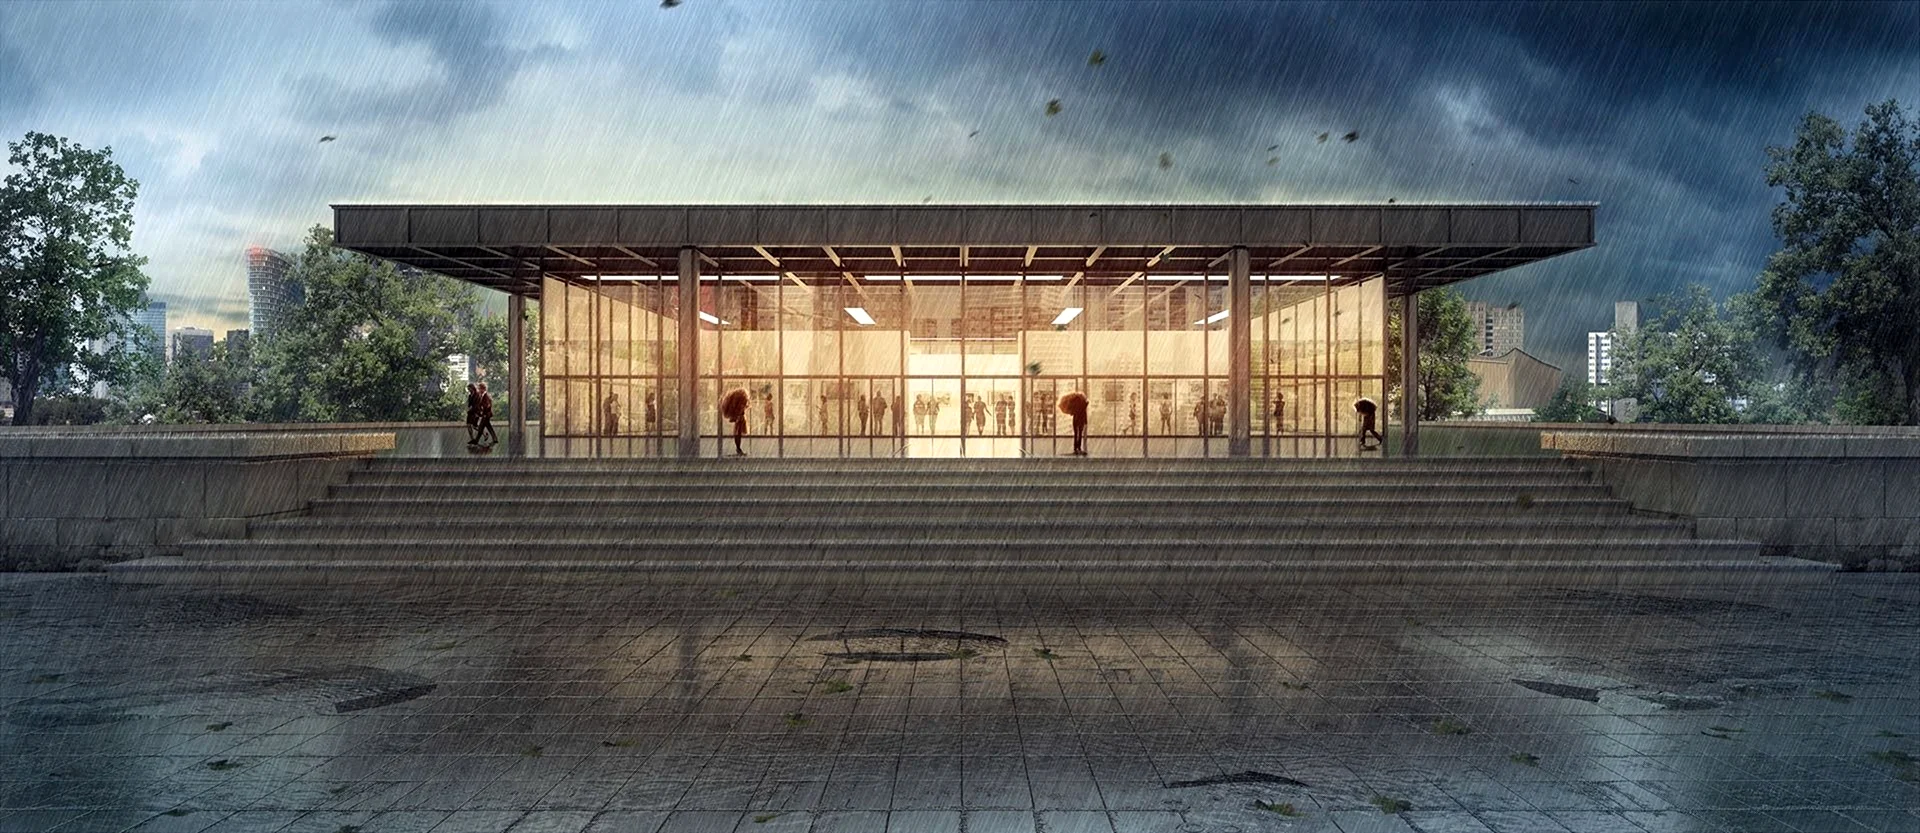 Новая Национальная галерея в Берлине планировка